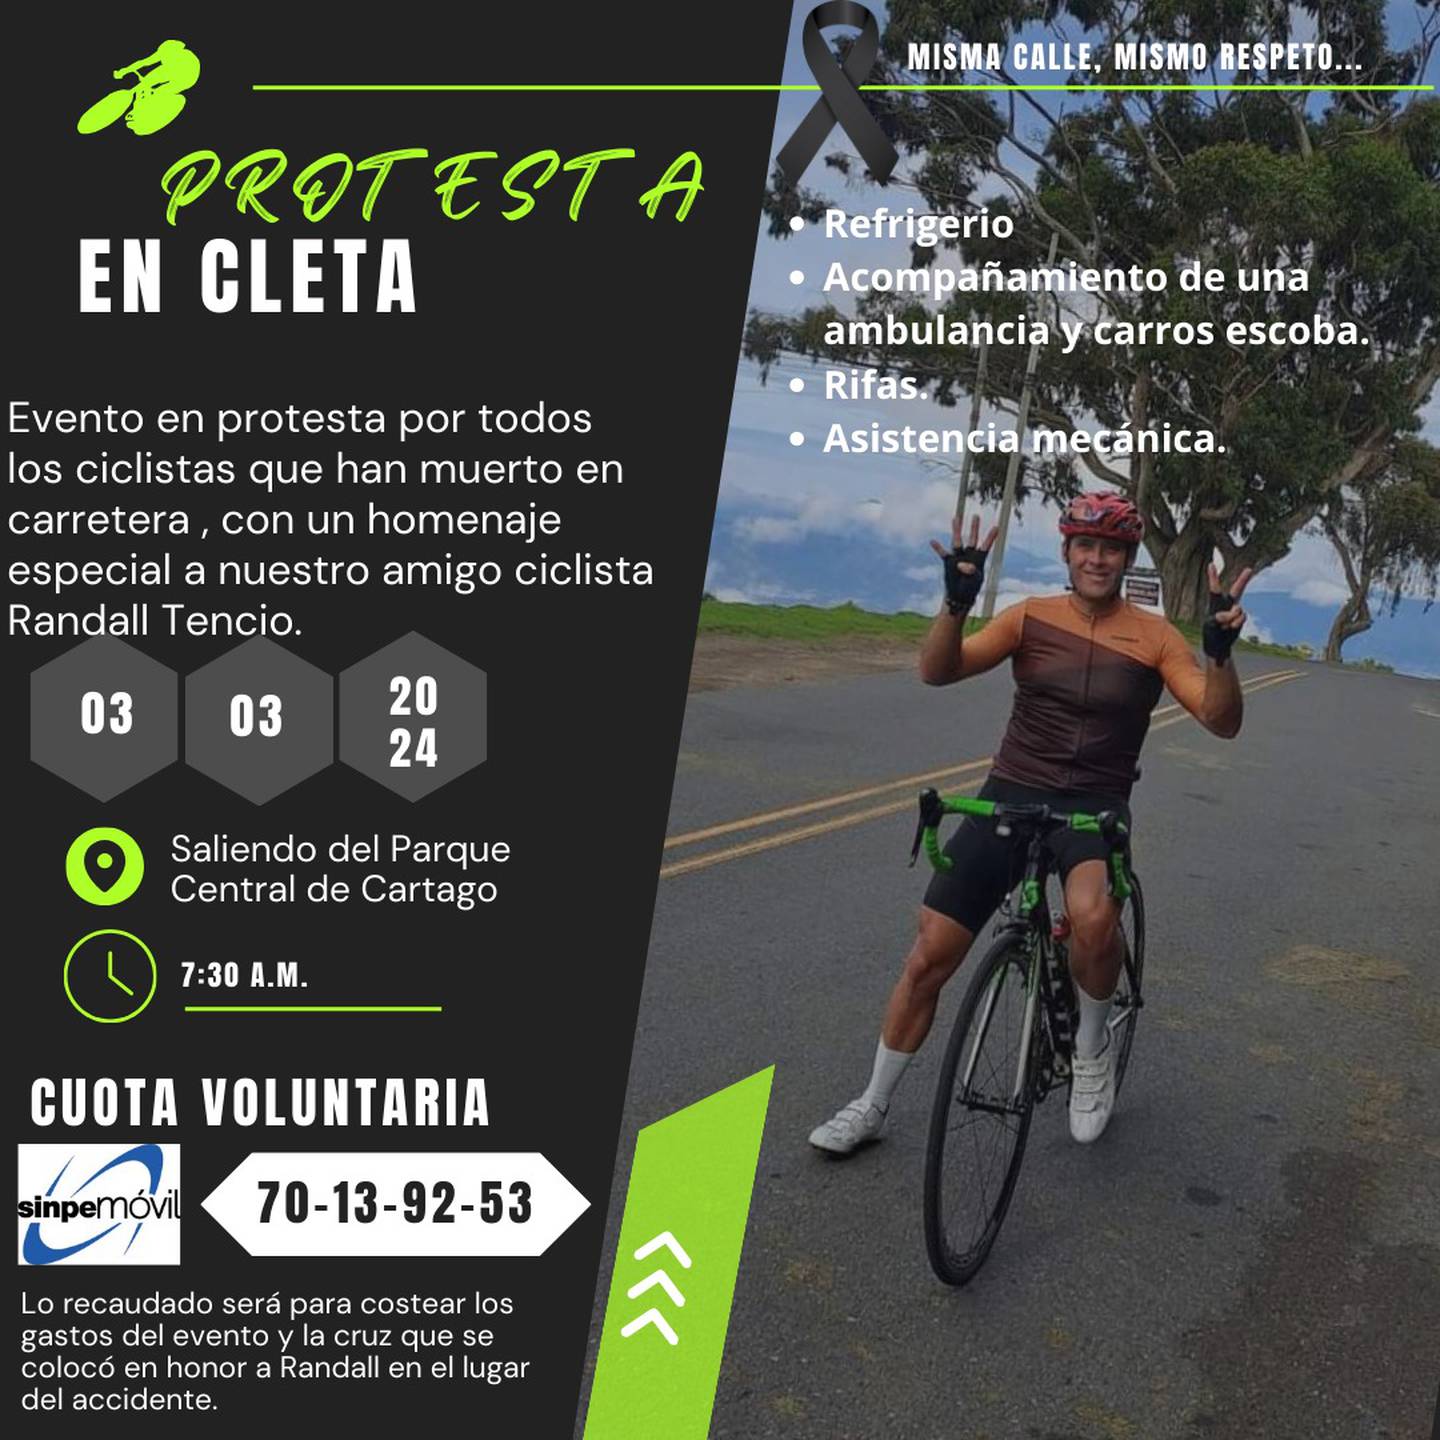 Cleteada en honor para Randall Tencio Calvo, ciclista que murió atropellado en La Cangreja, cerro de la Muerte.